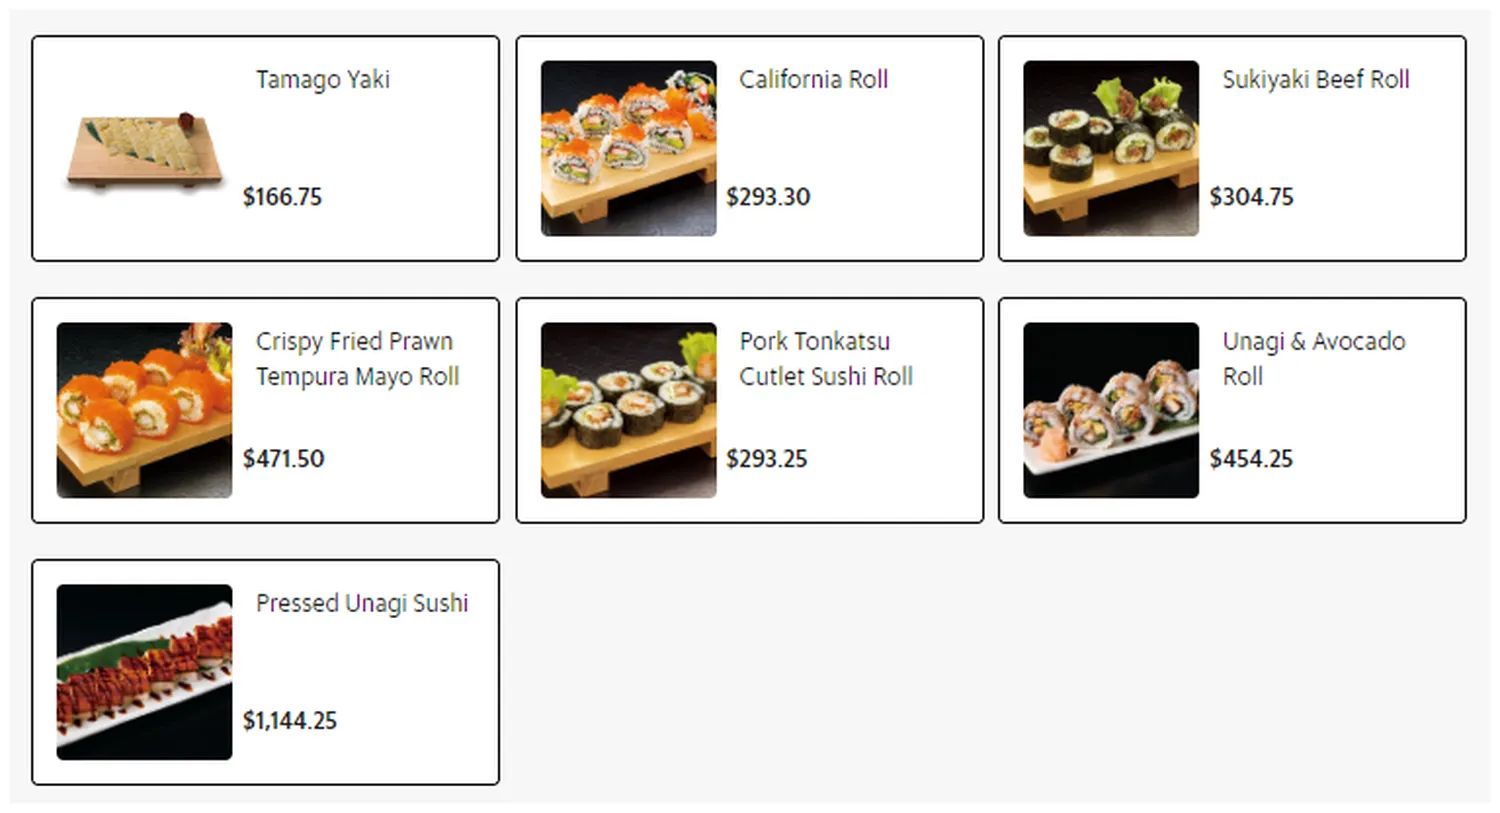 botejyu menu philippine sushi and sashimi